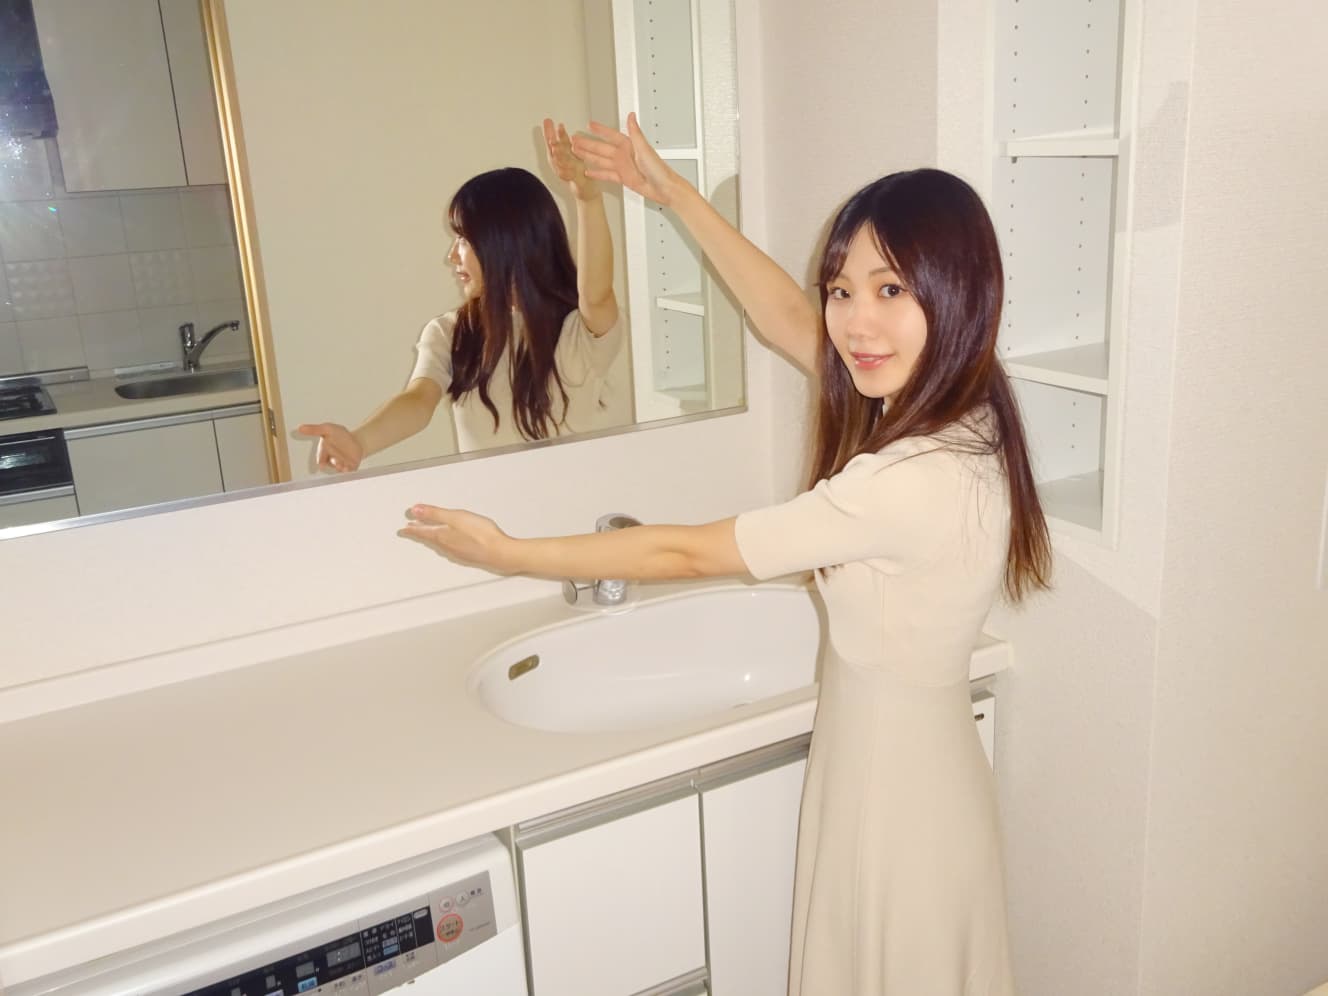 鏡の大きさを伝えるひなさん。案内された物件の賃料は13万円だった